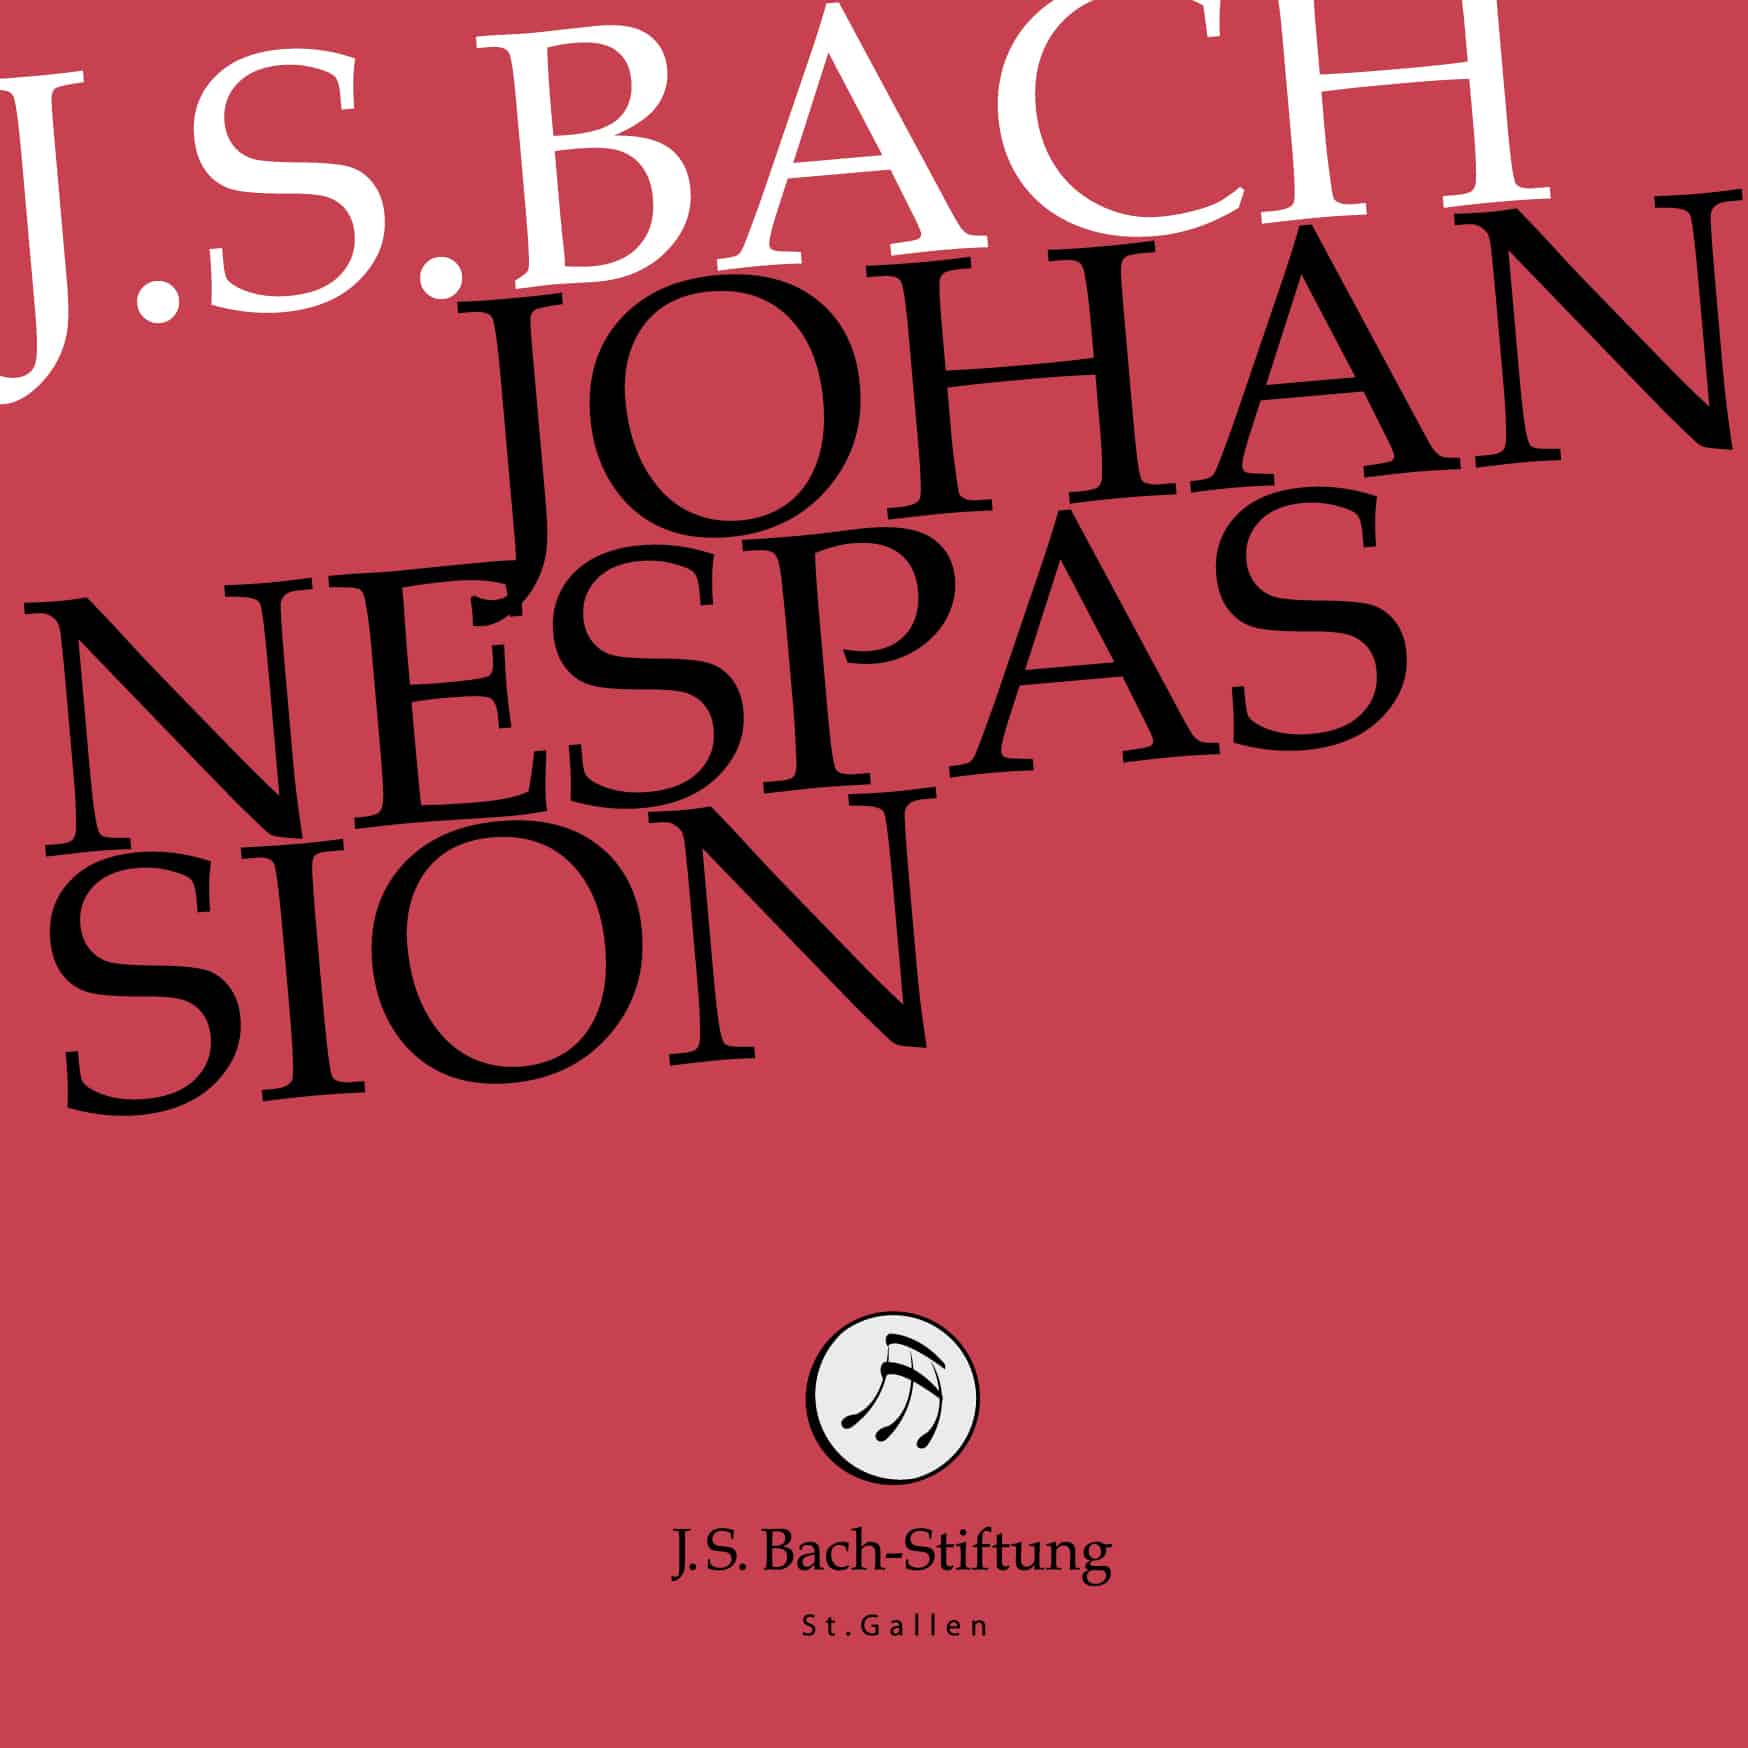 Medienmitteilung: Auf Passionstournee mit der Johannespassion von J. S. Bach